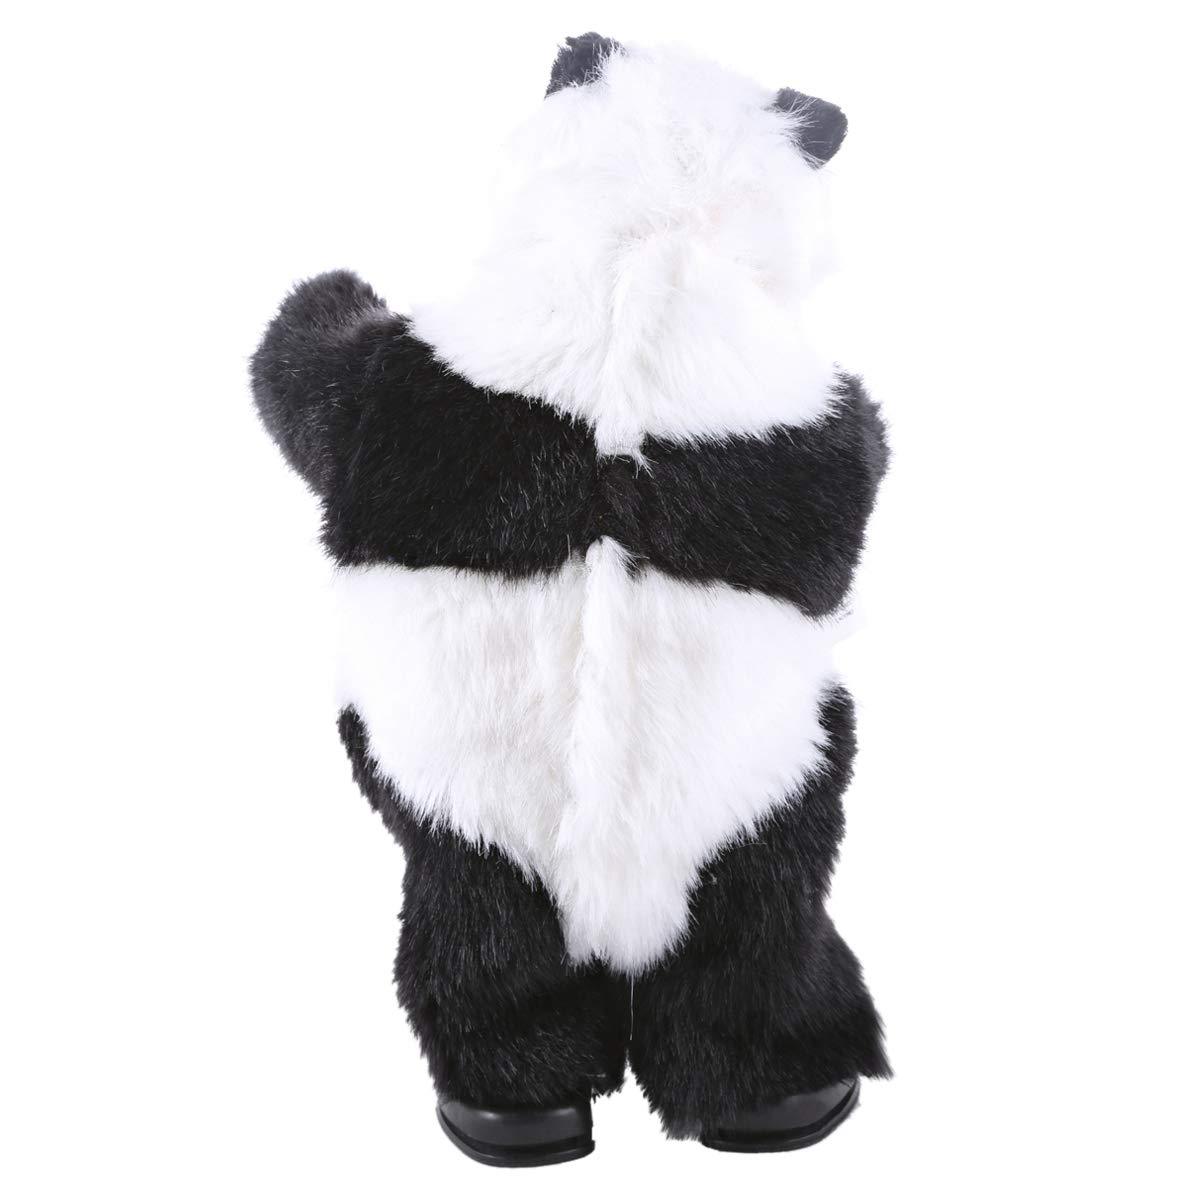 520 Electronic Dancing Panda - Daweigao 3